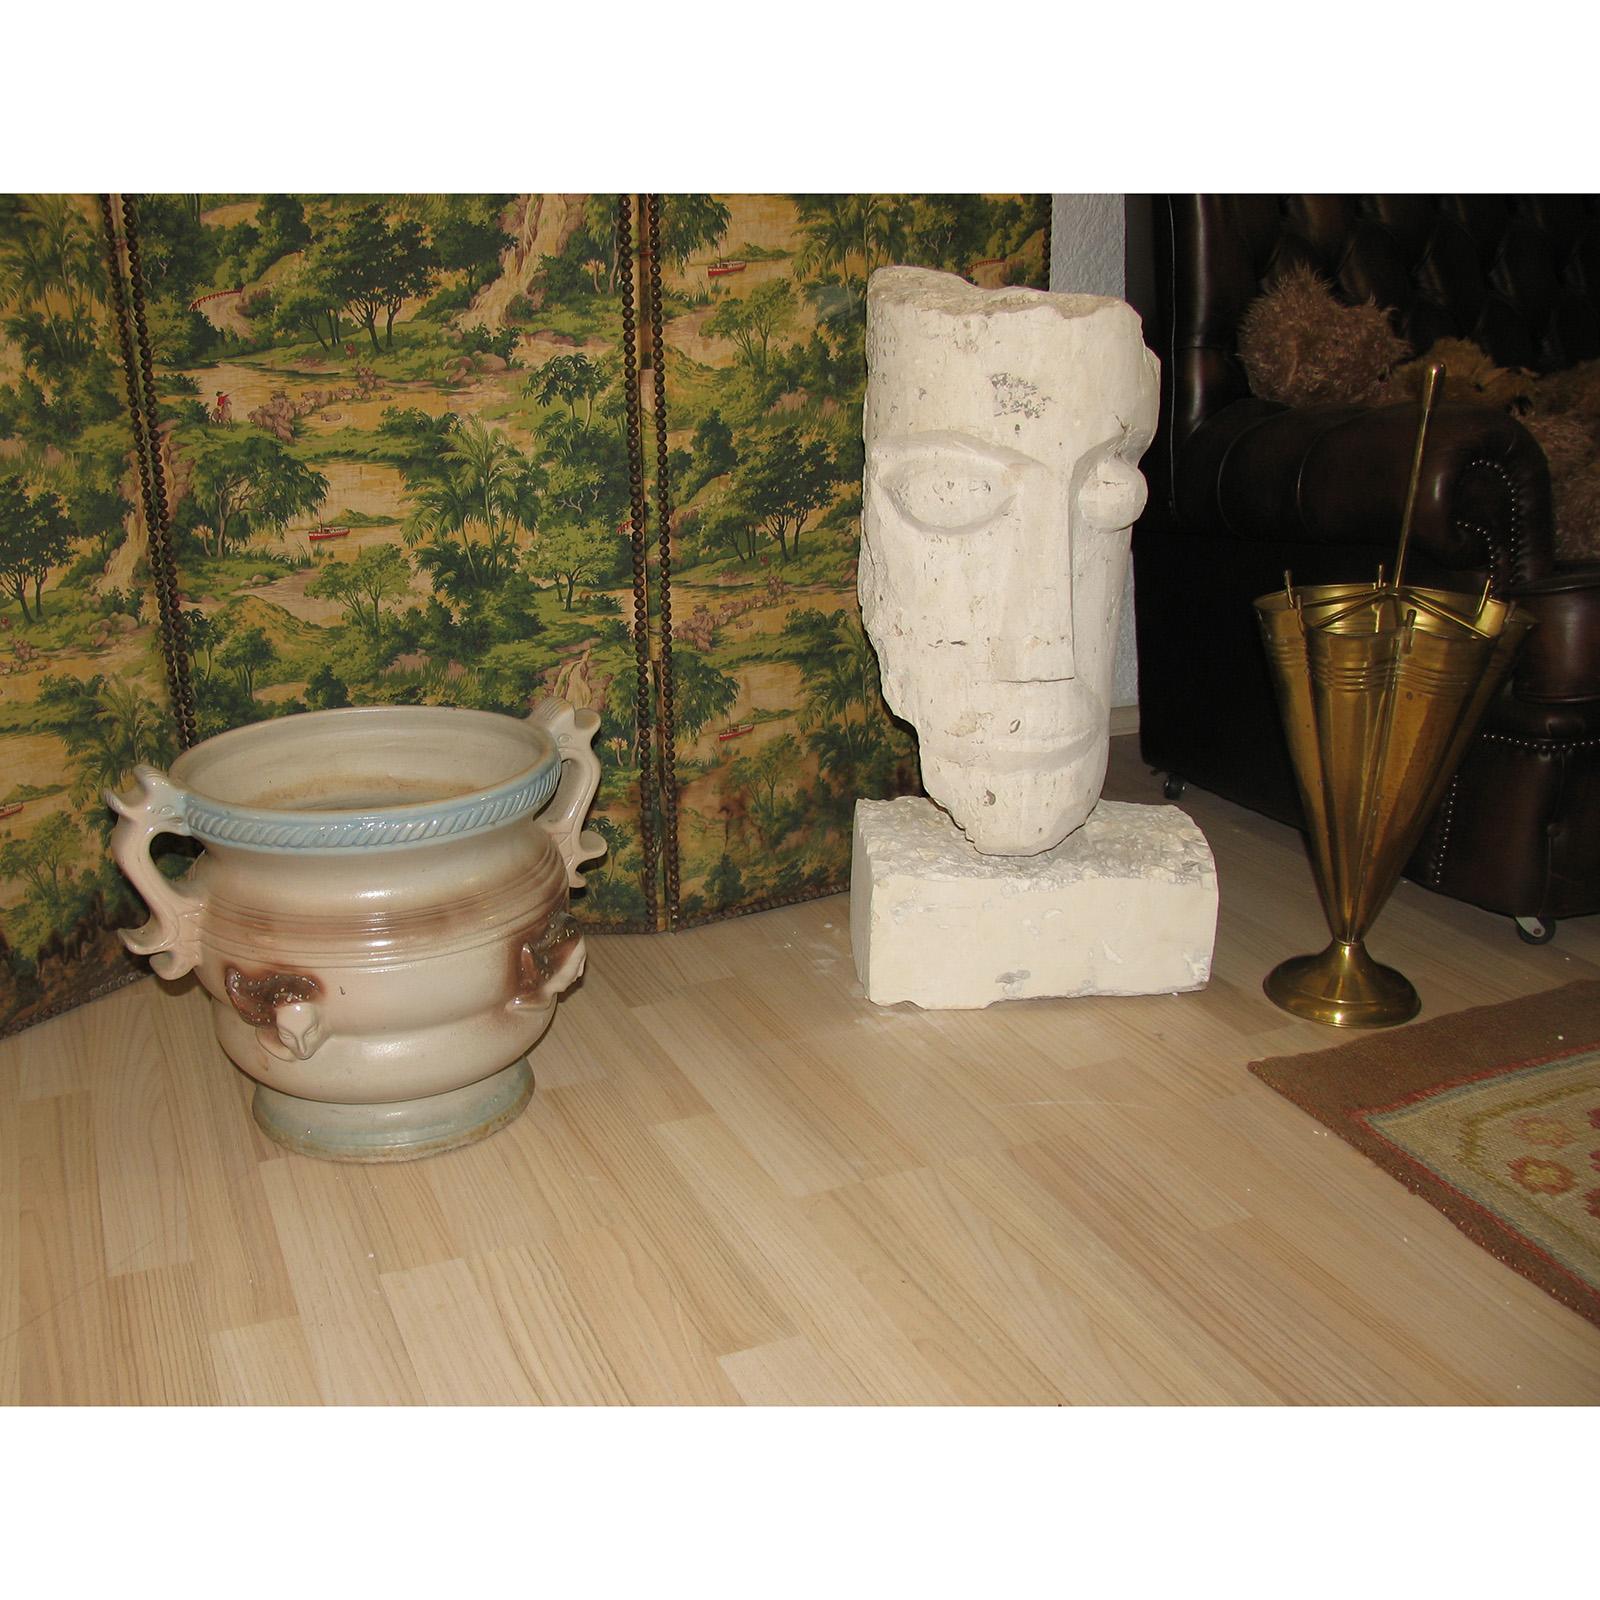 Art Deco Pflanzgefäß aus Steingut mit Griffen, Frankreich, 1940er Jahre

Großer Übertopf aus Keramik in Form einer Amphora im Art déco-Stil, auf der Vorderseite mit langhaarigen Mädchenköpfen verziert. Glasiert, Schattierungen von Hellblau und